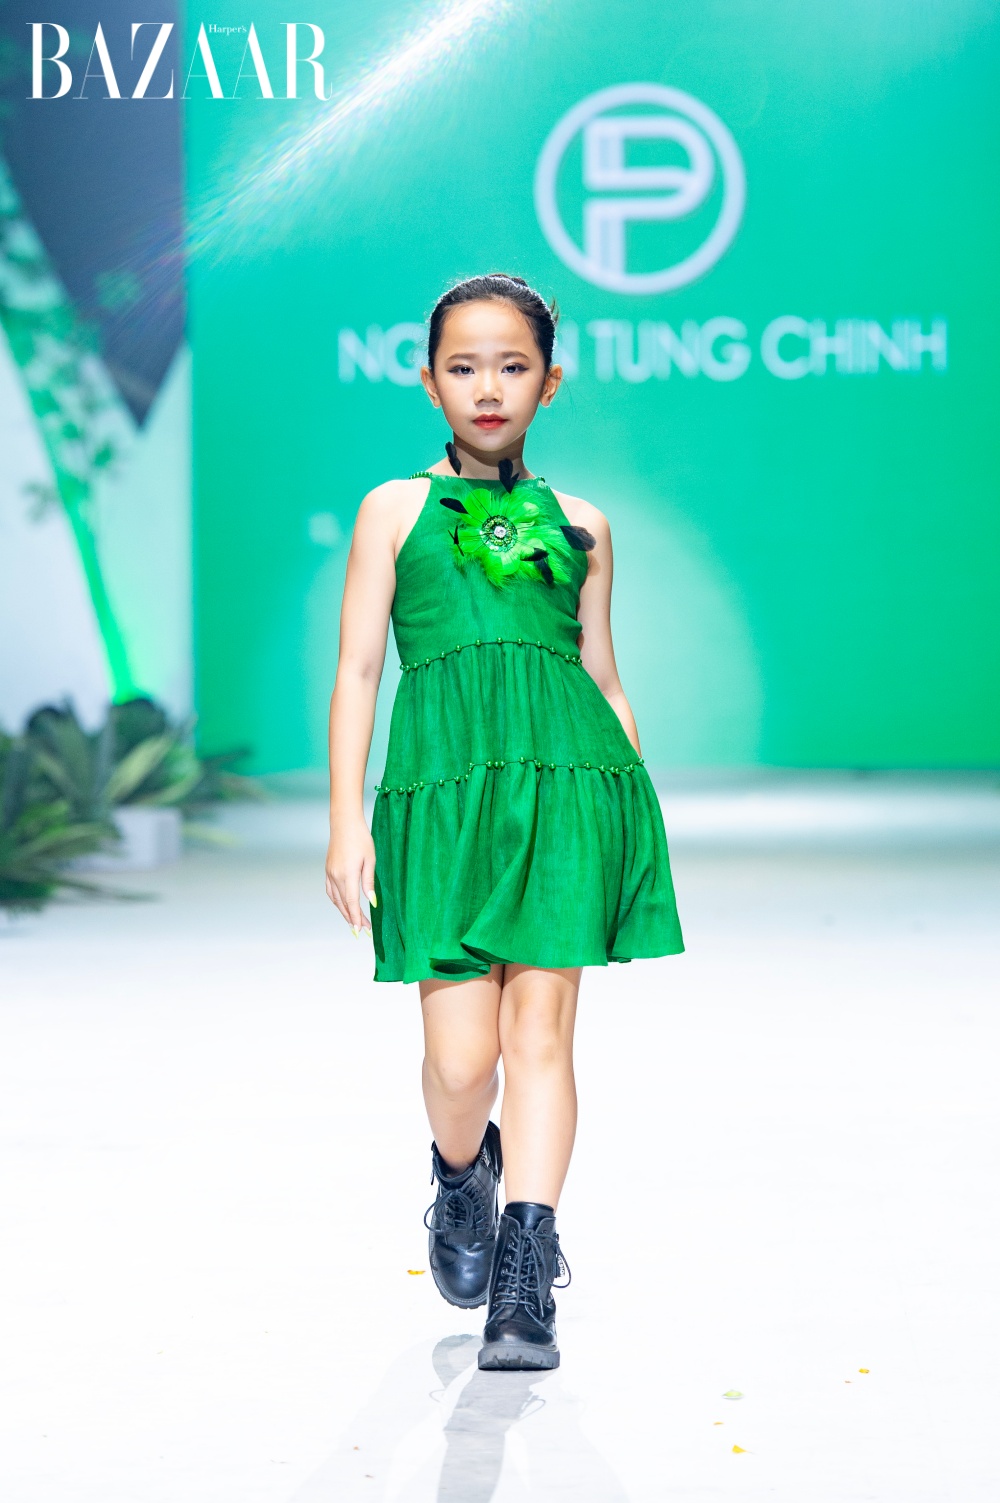 BST Yếm Hoa, NTK Nguyễn Tùng Chinh, Vietnam Kids Art Fashion Fest 2 